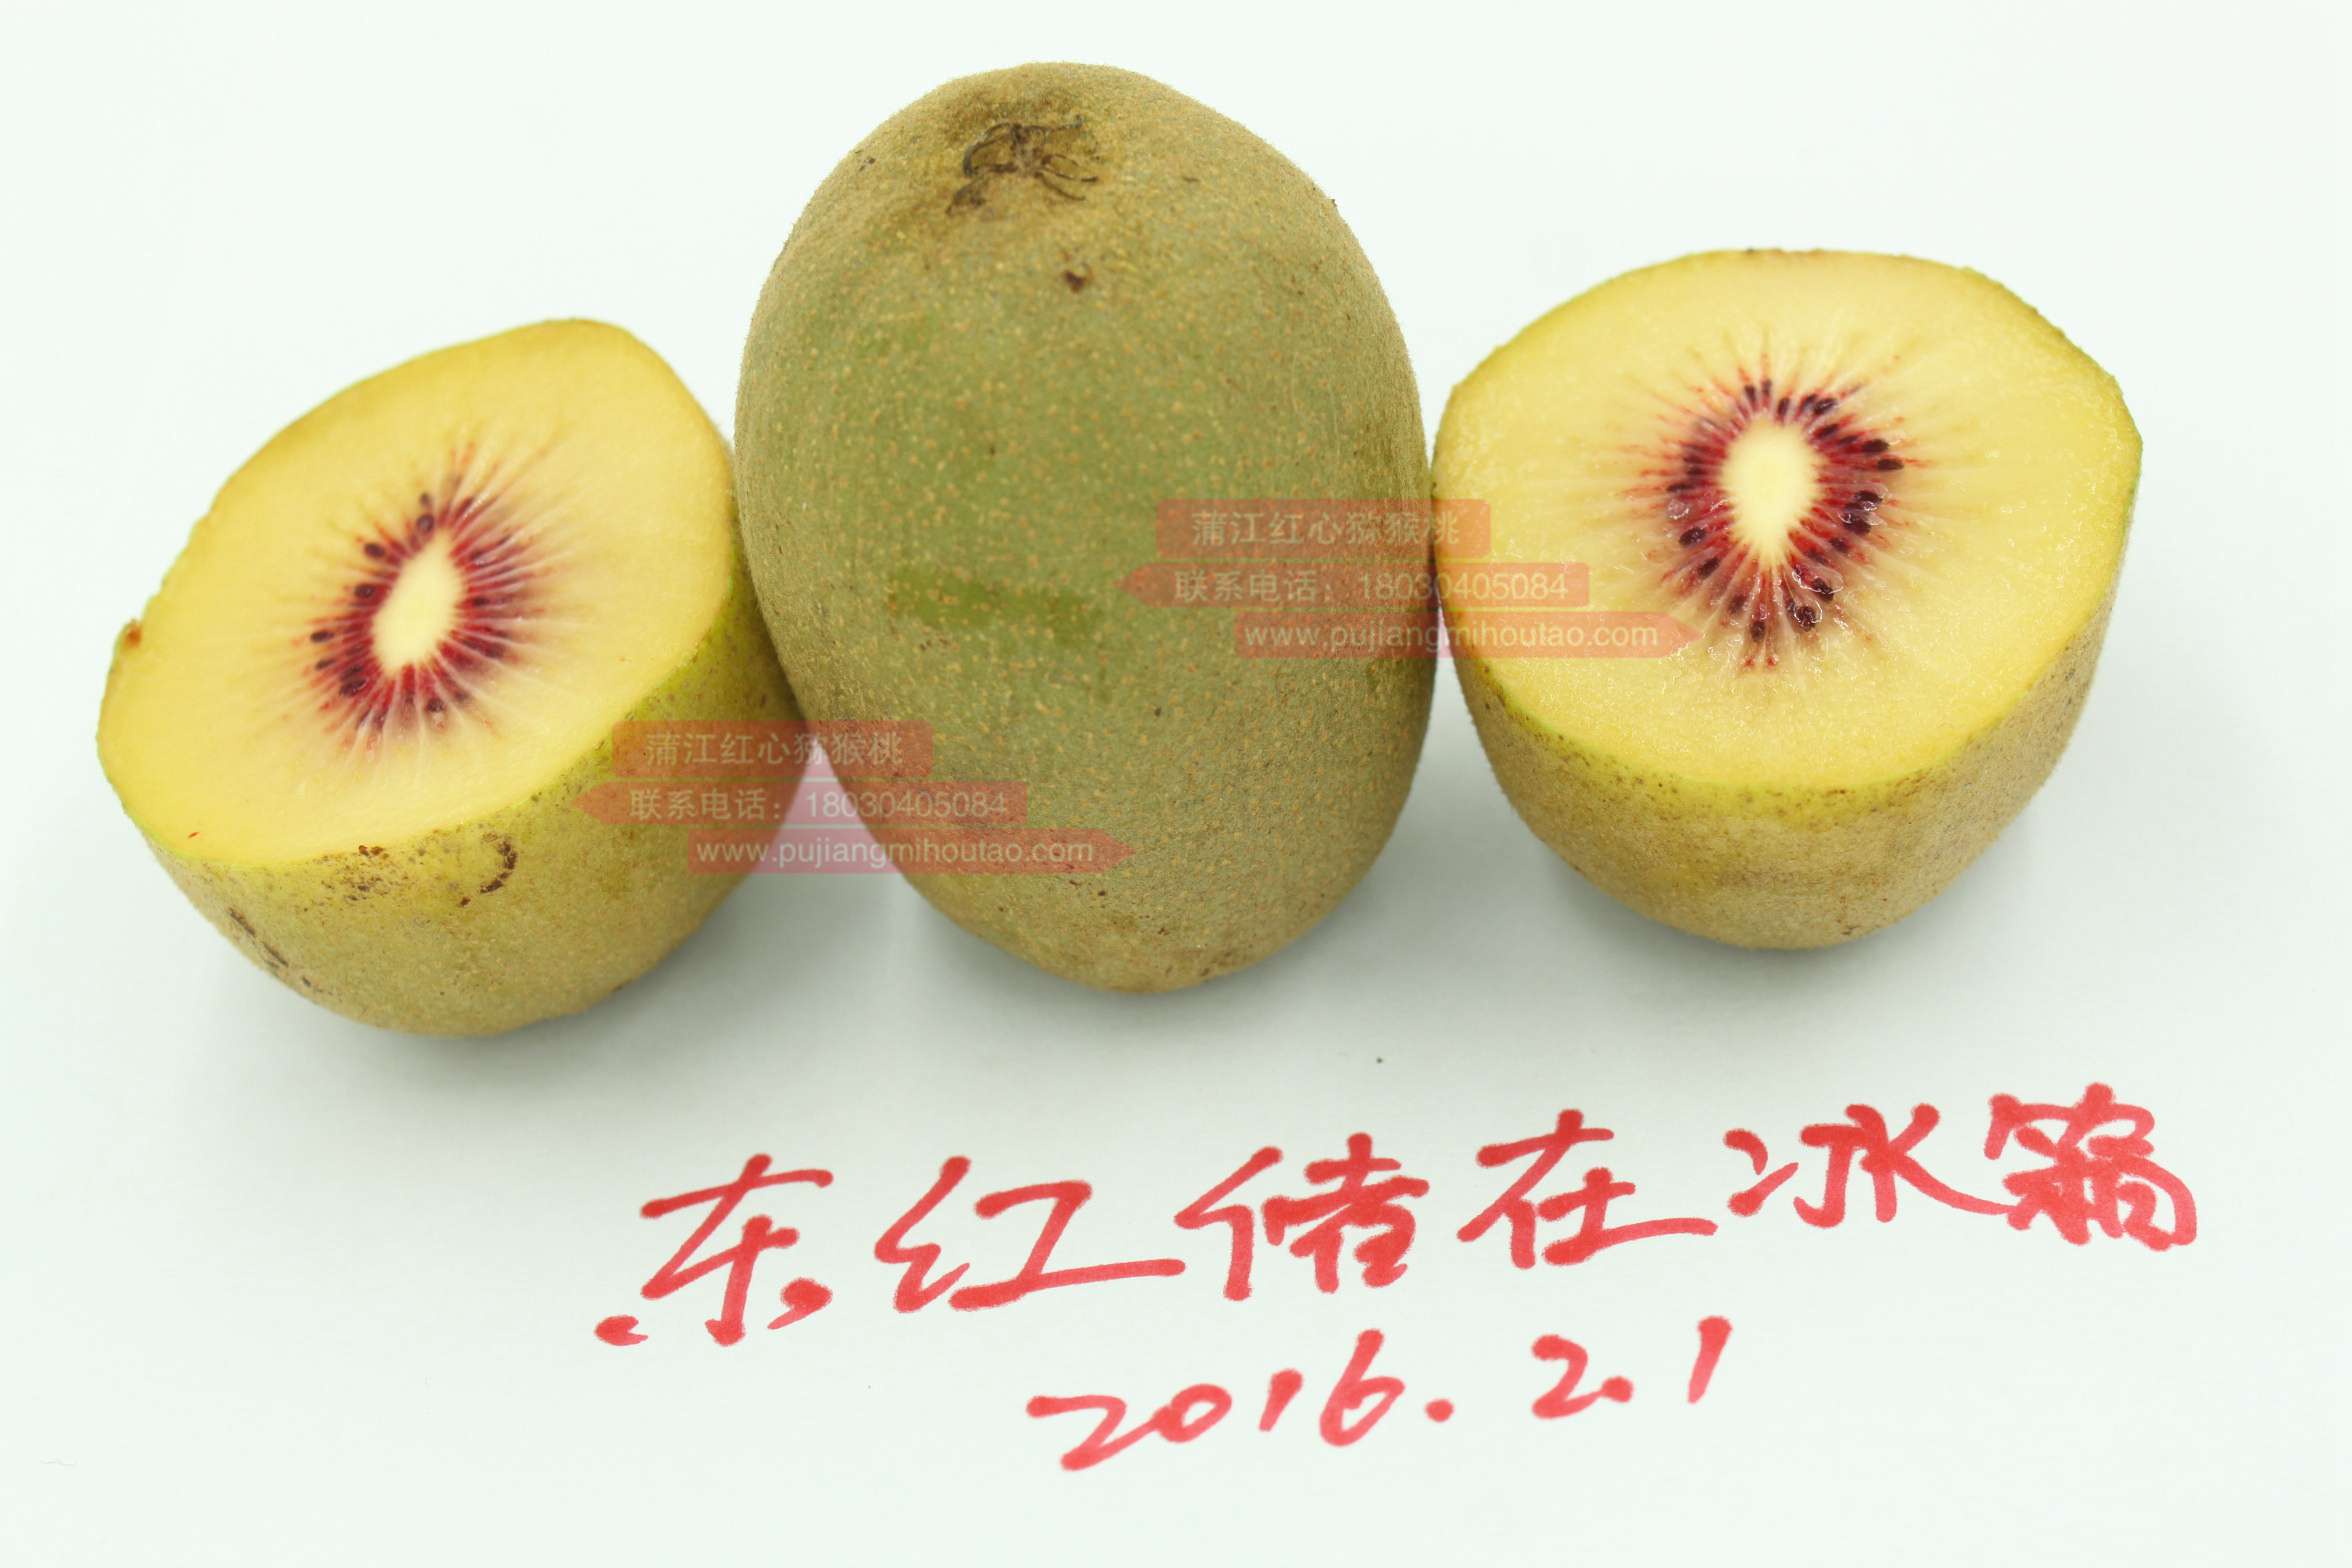 贵州高山东红猕猴桃发育要155天以上到成熟